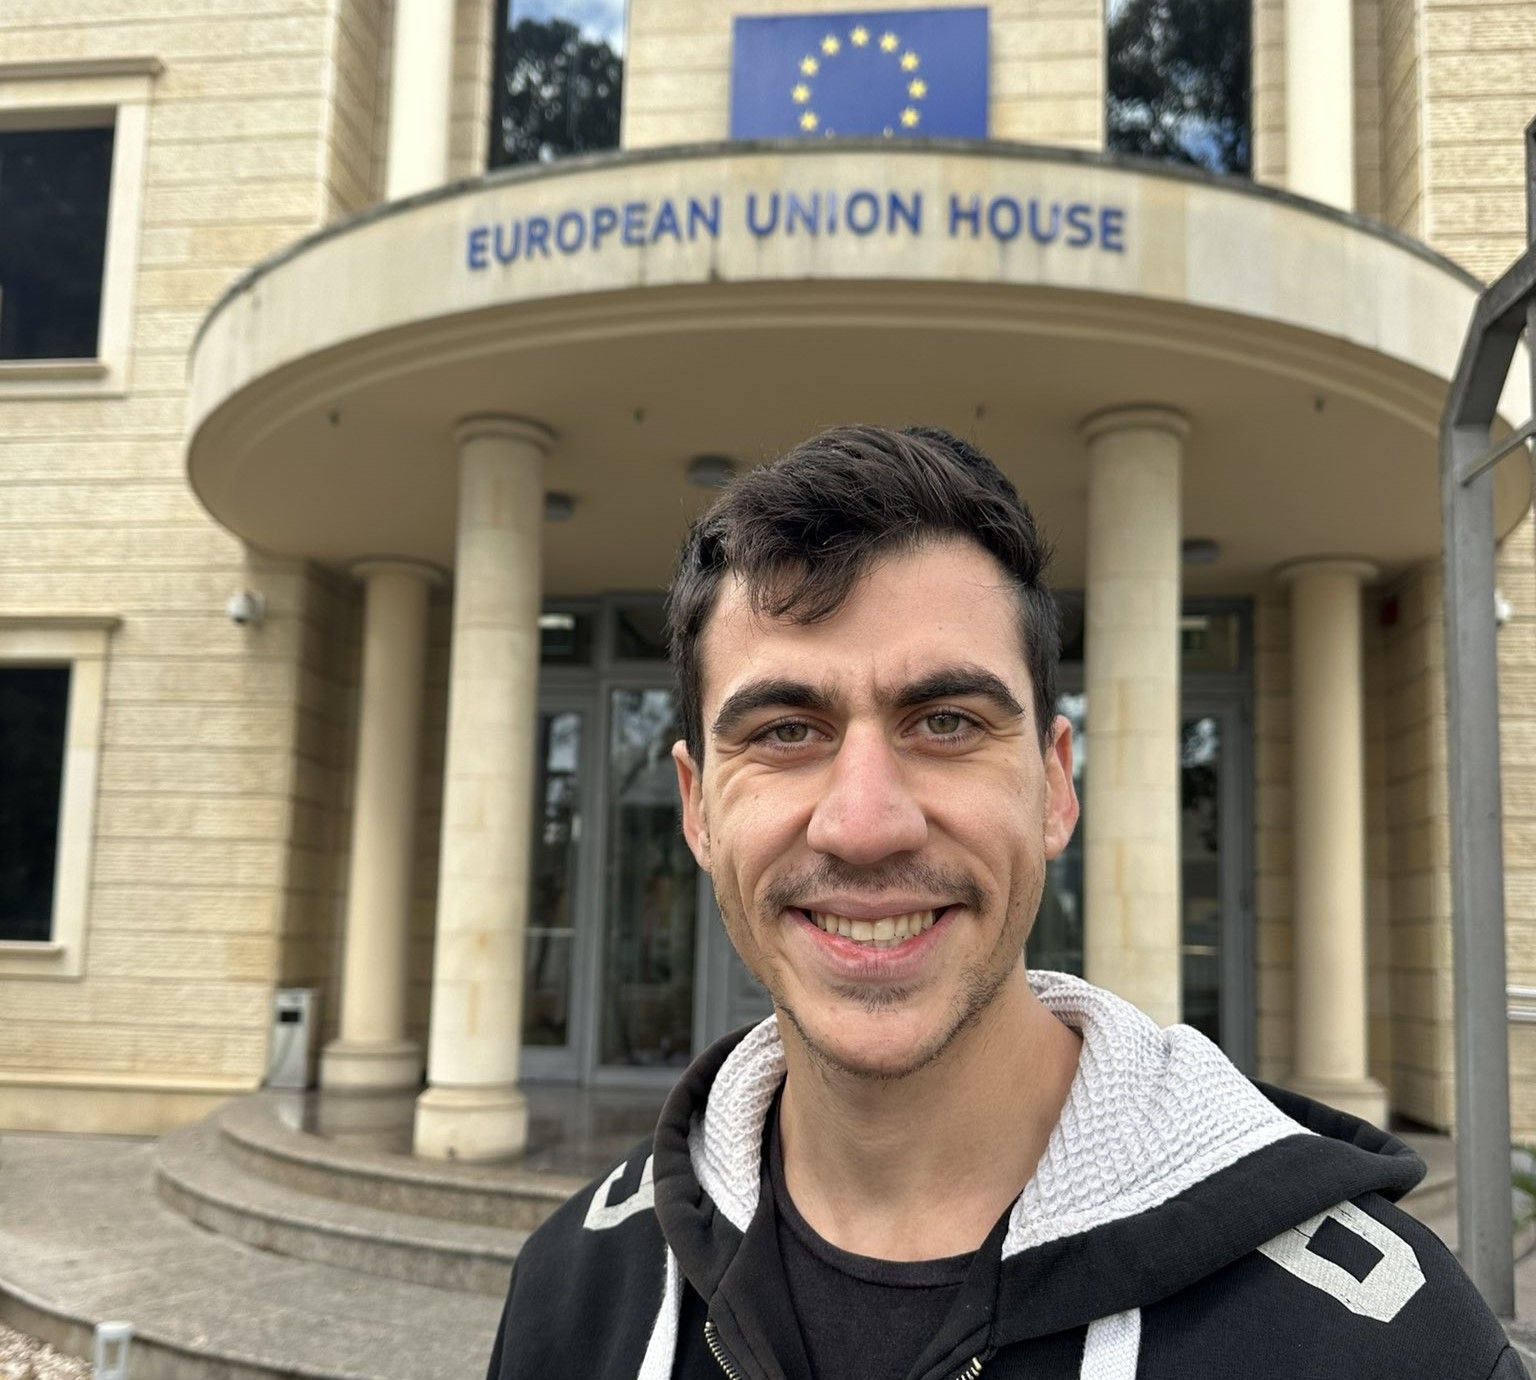 fidias-panayiotou-lo-youtuber-cipriota-eletto-al-parlamento-europeo-main